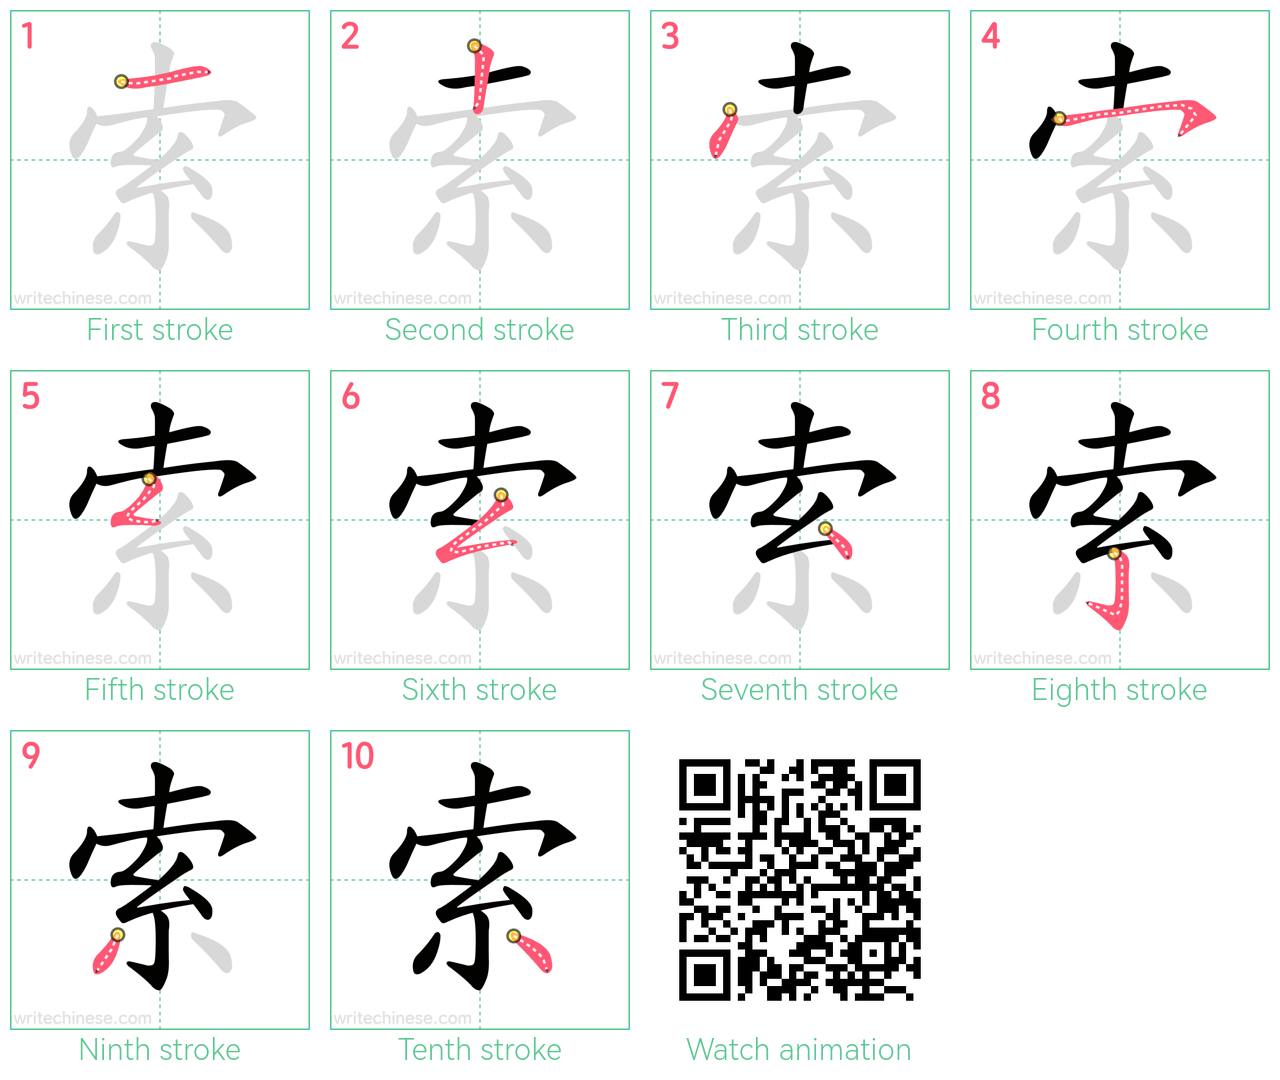 索 step-by-step stroke order diagrams